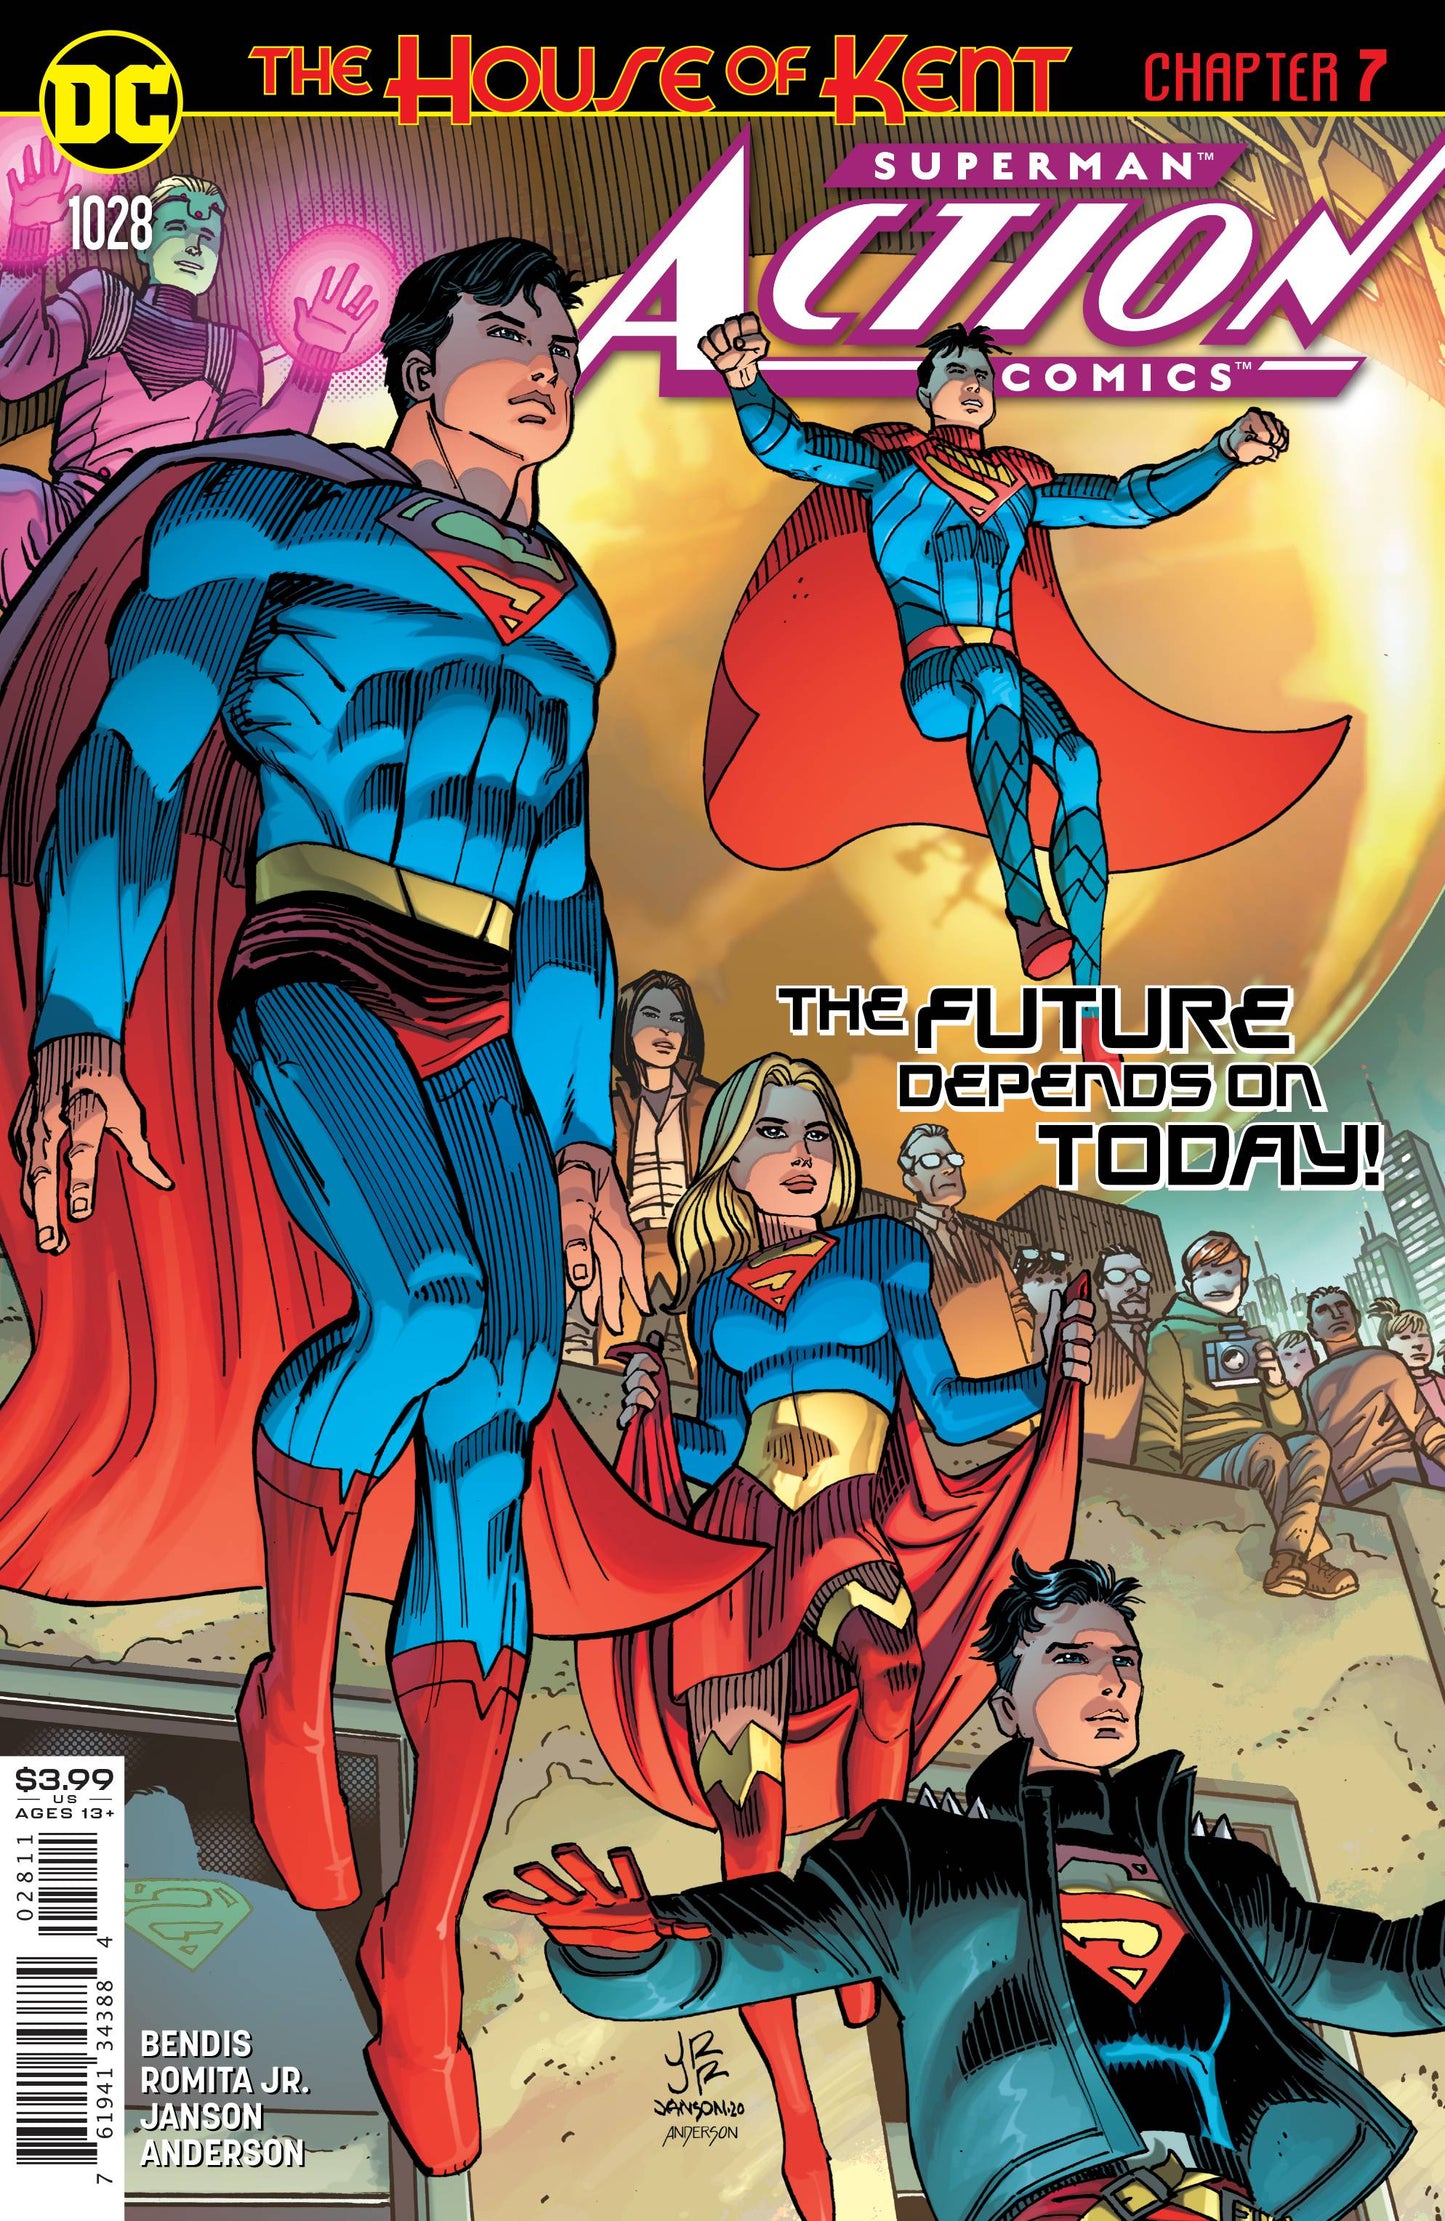 Action Comics Vol. 3 #1028